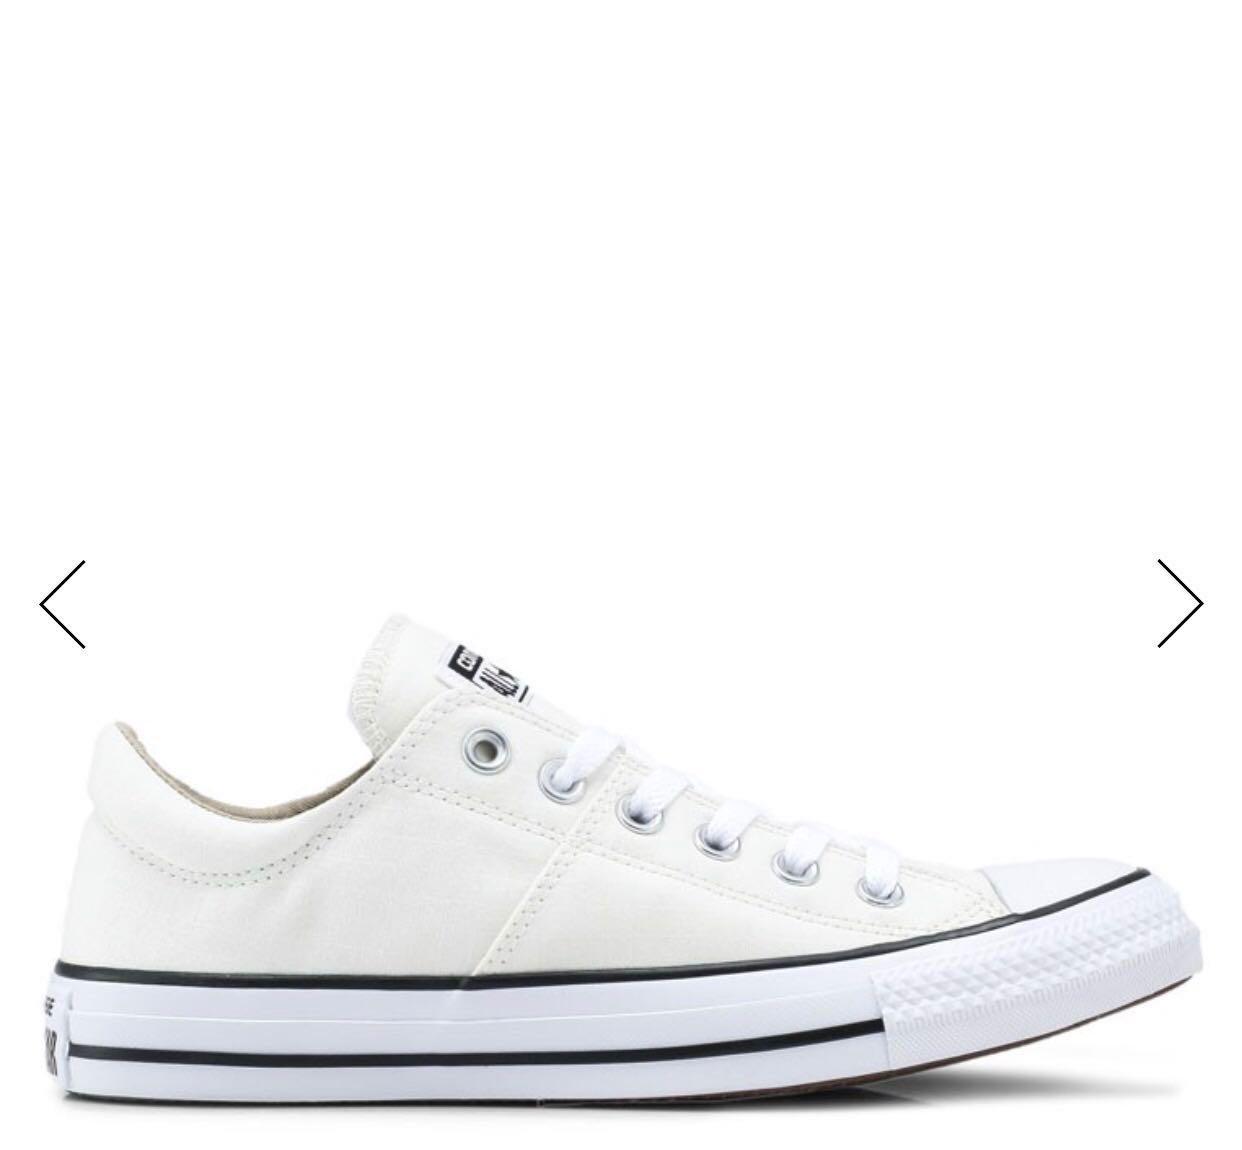 next converse shoes